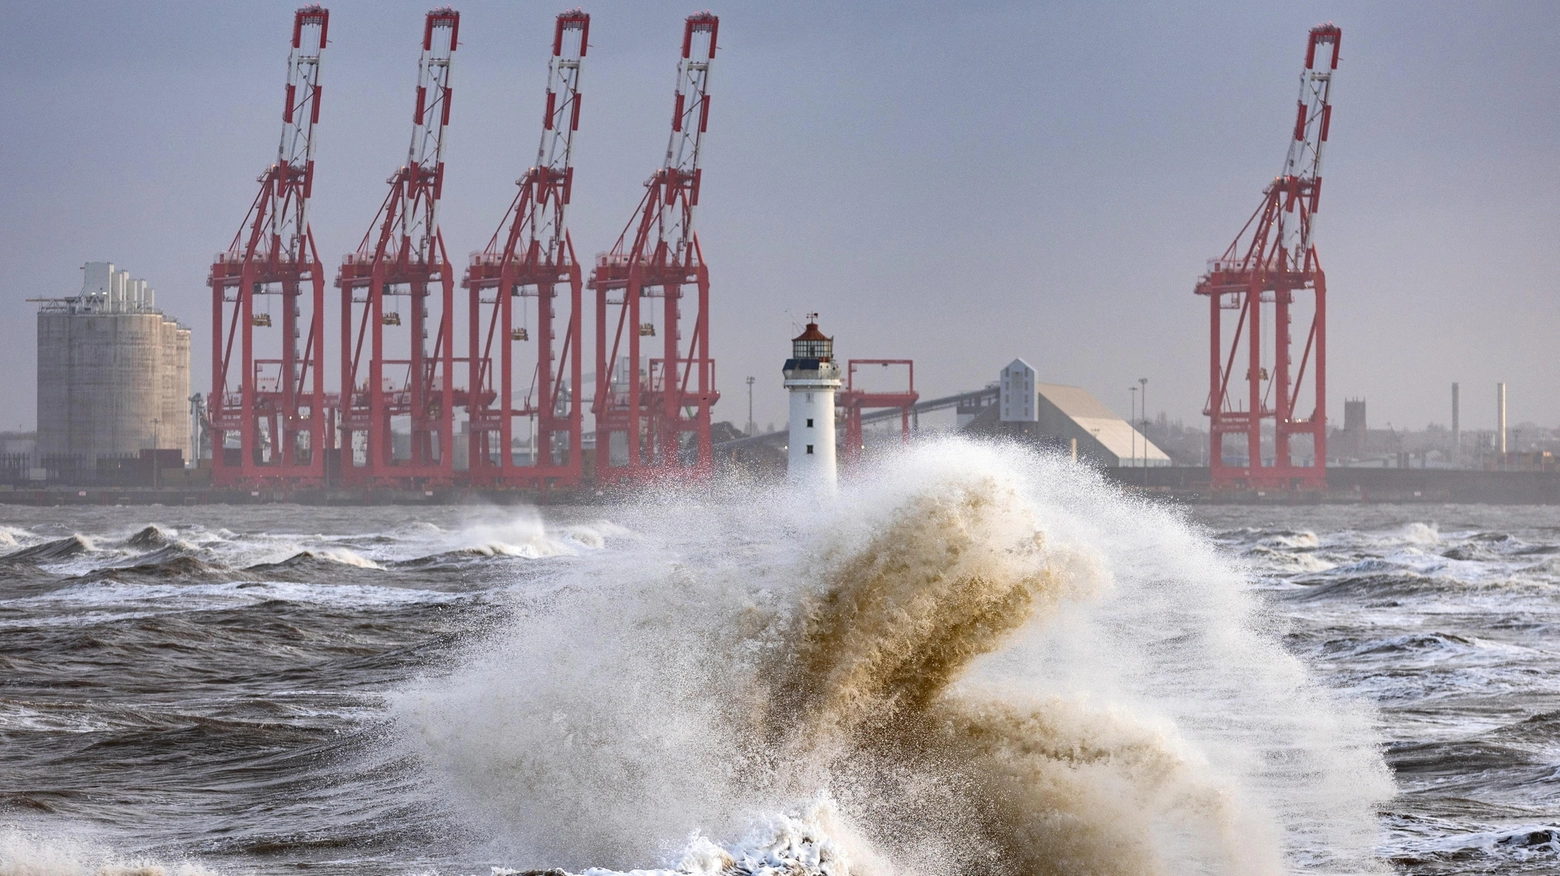 Mare in tempesta a New Brighton (Ansa)